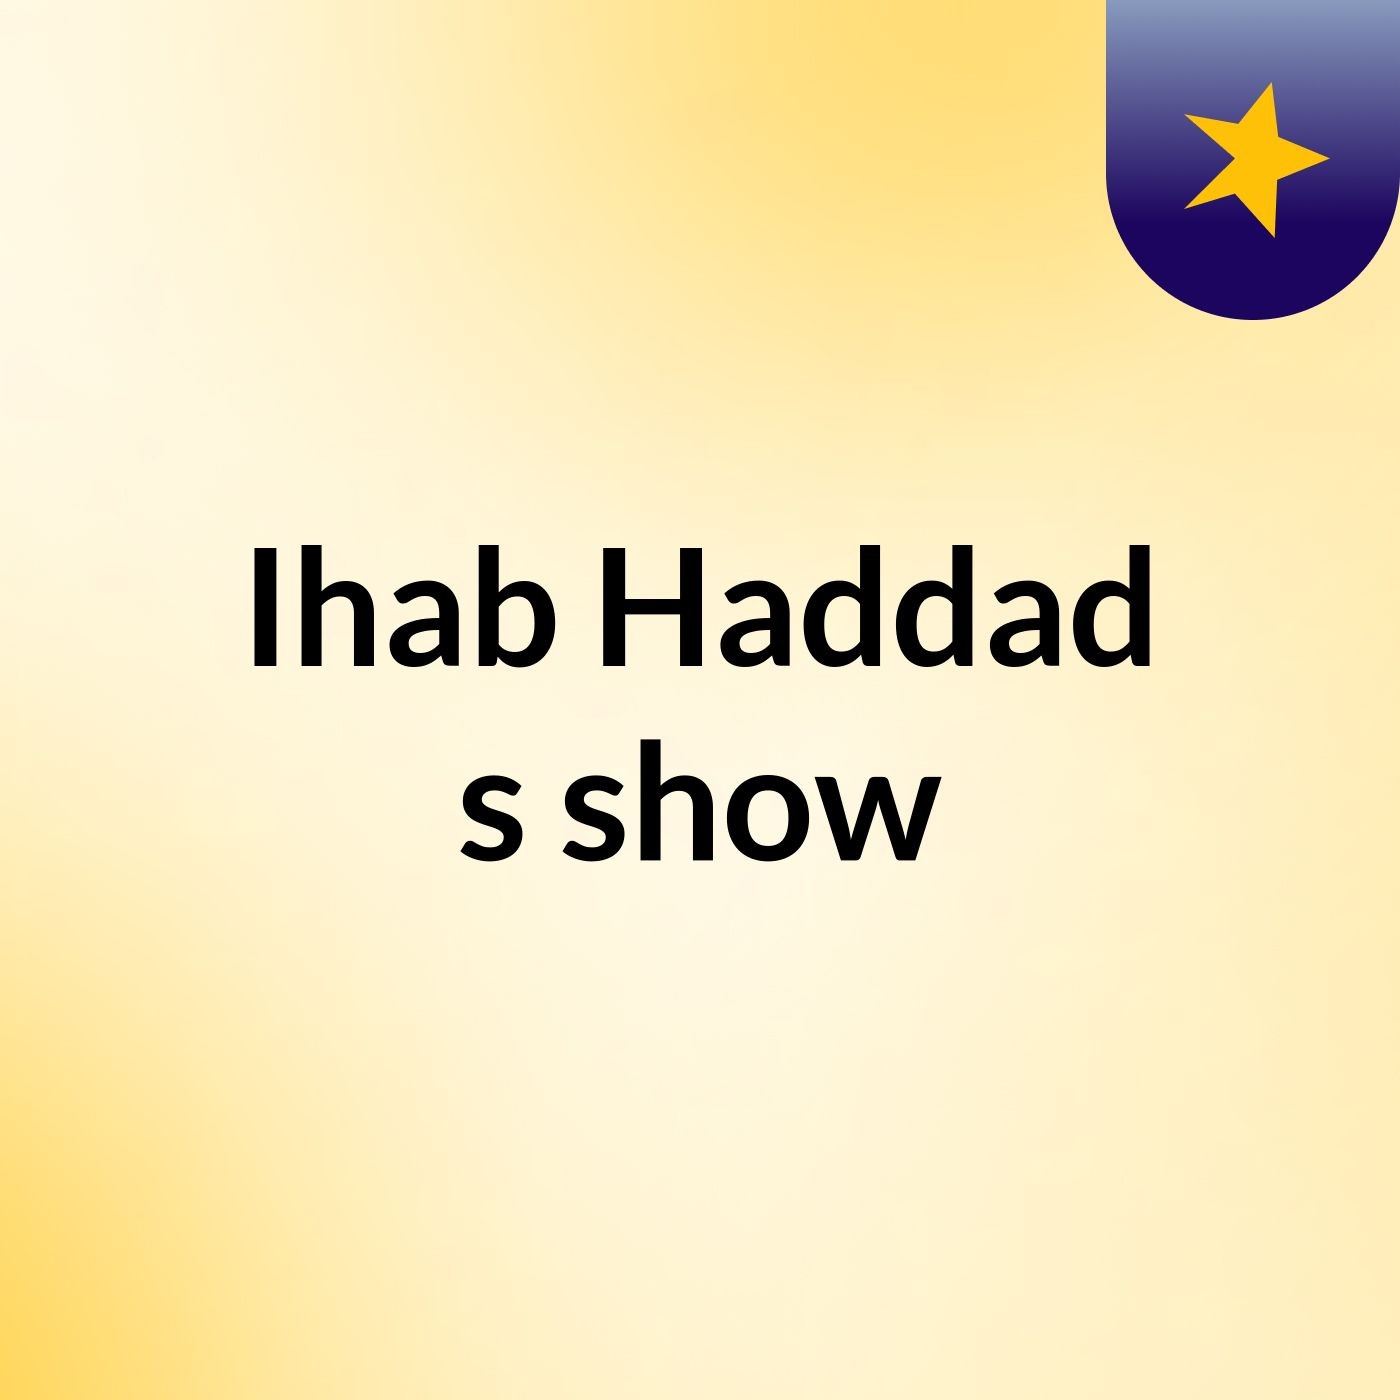 Ihab Haddad's show